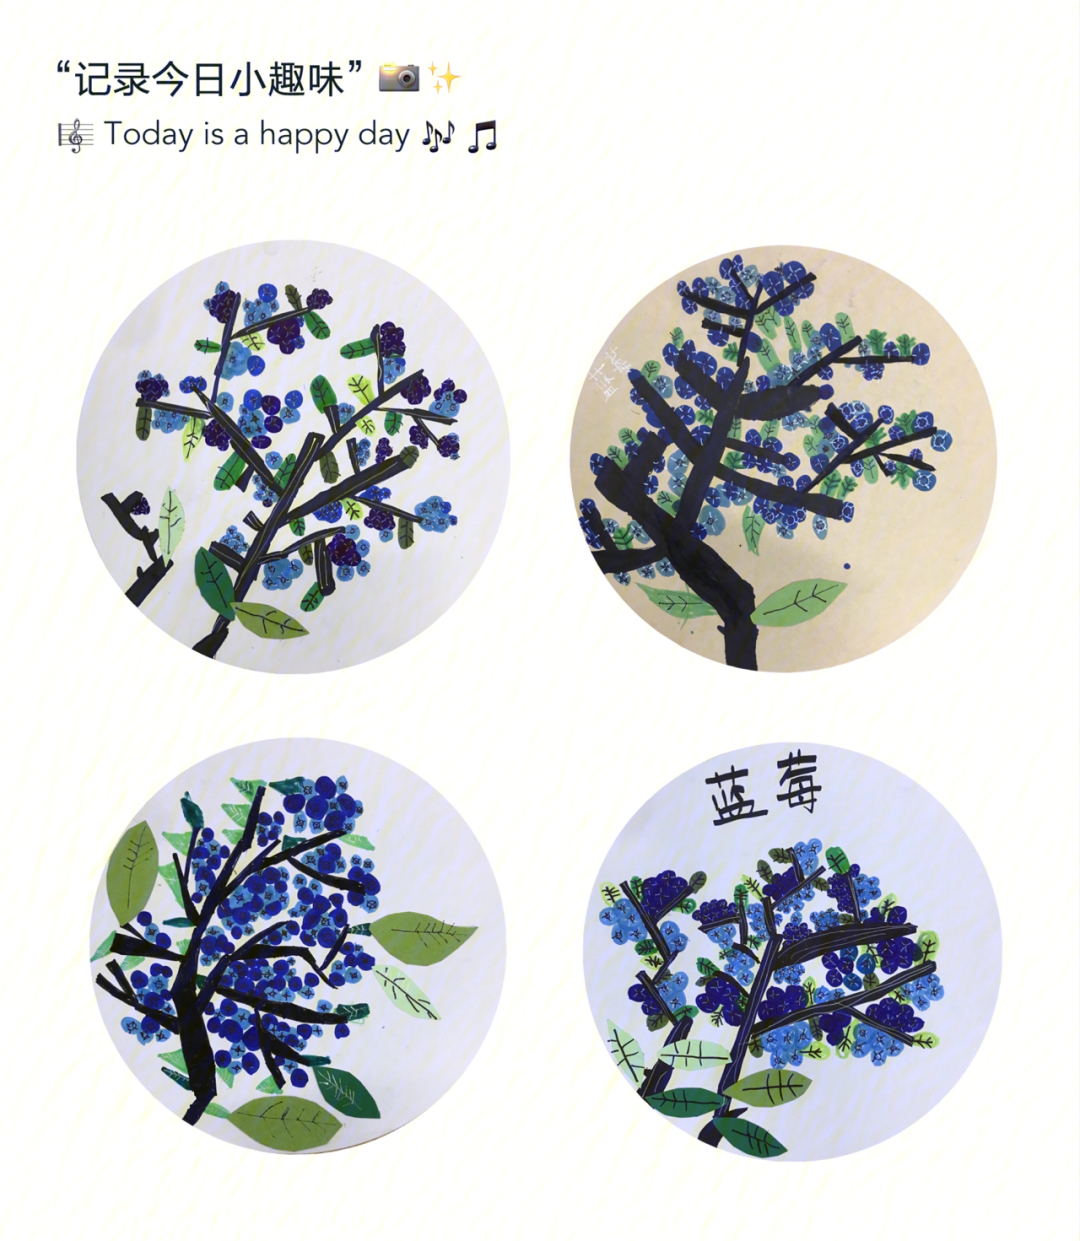 蓝莓树56岁